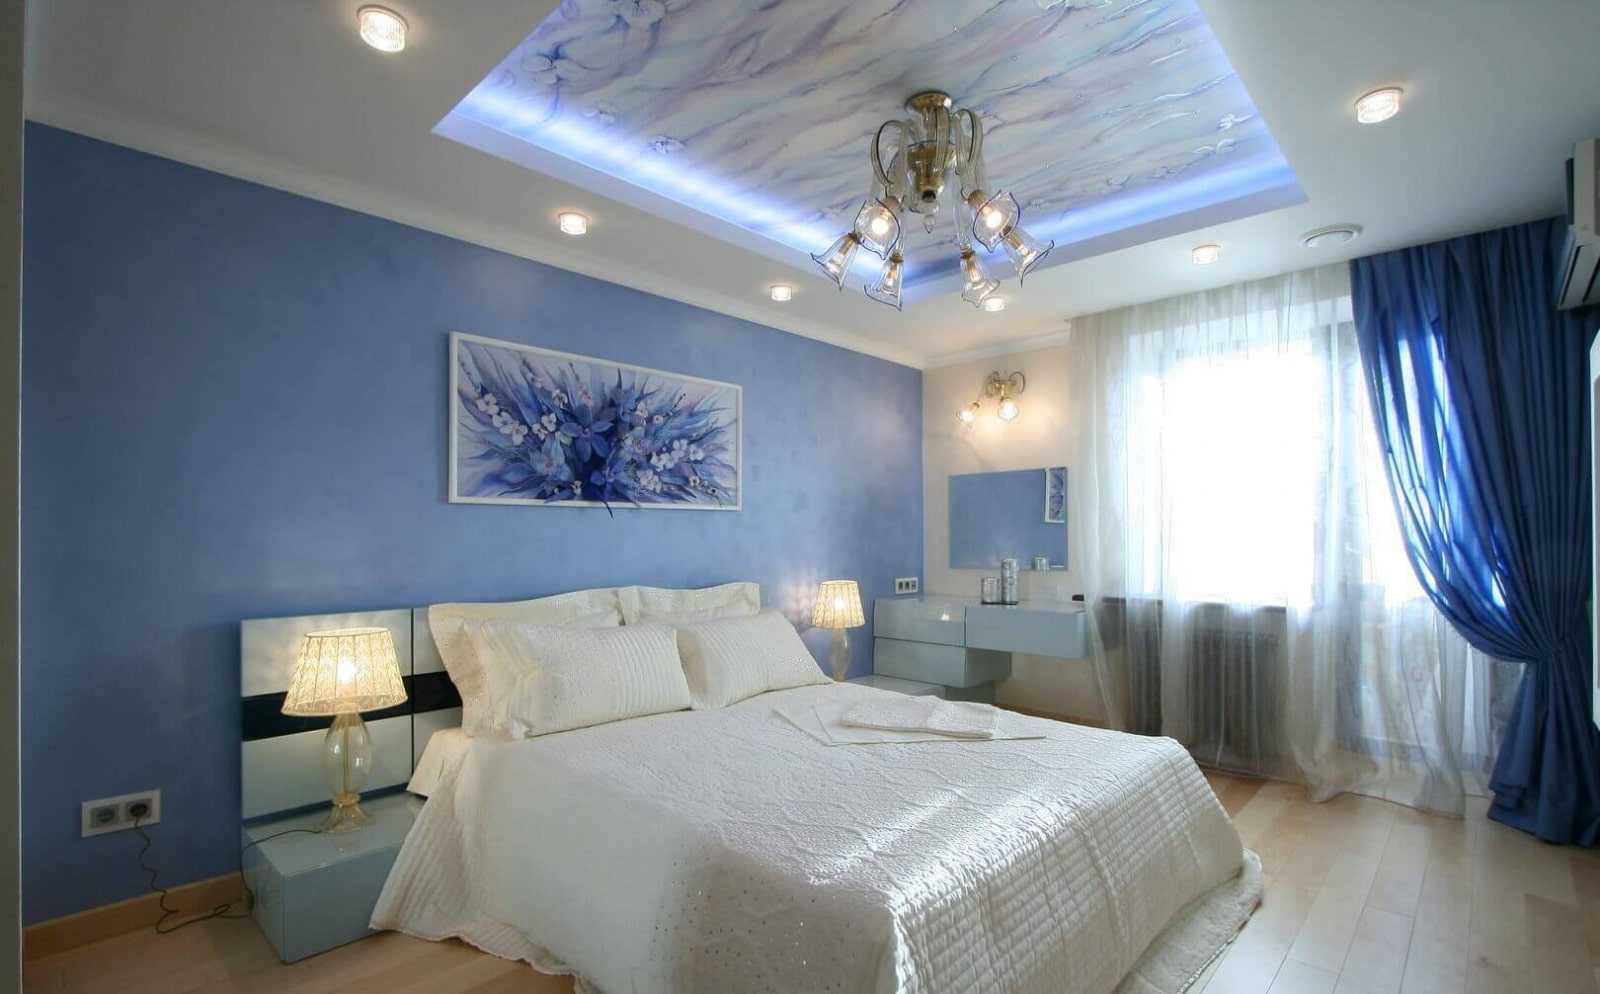  потолок в спальне современный с подсветкой: красивые варианты .